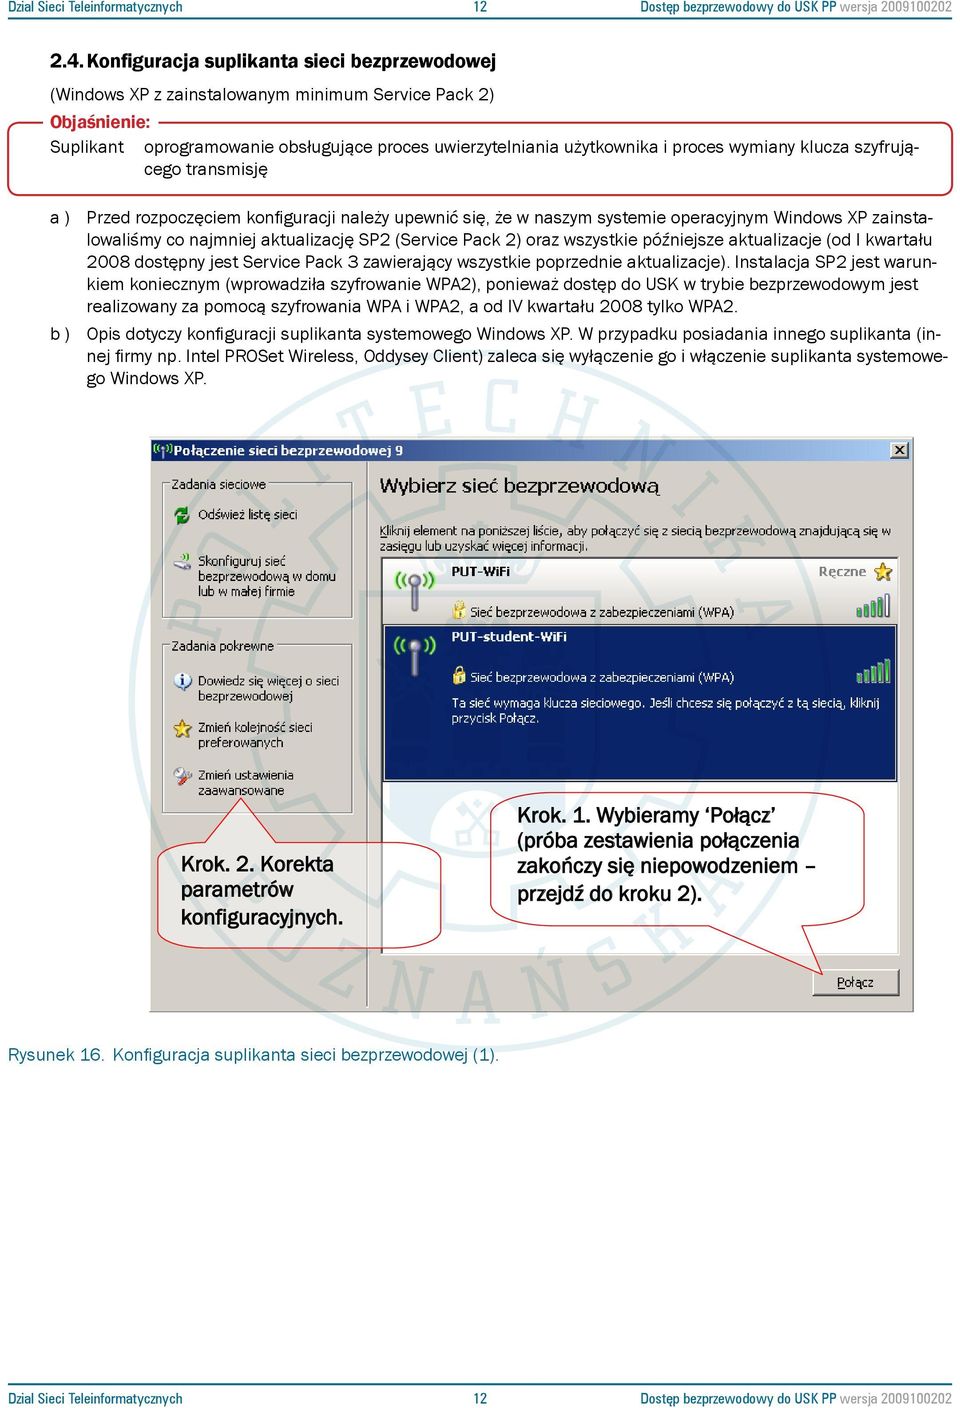 Konfiguracja suplikanta sieci uwierzytelniania bezprzewodowej użytkownika i proces (Windows XP z zainstalowanym minimum wymiany Service Pack klucza 2) szyfrującego transmisję Objaśnienie: a ) Przed